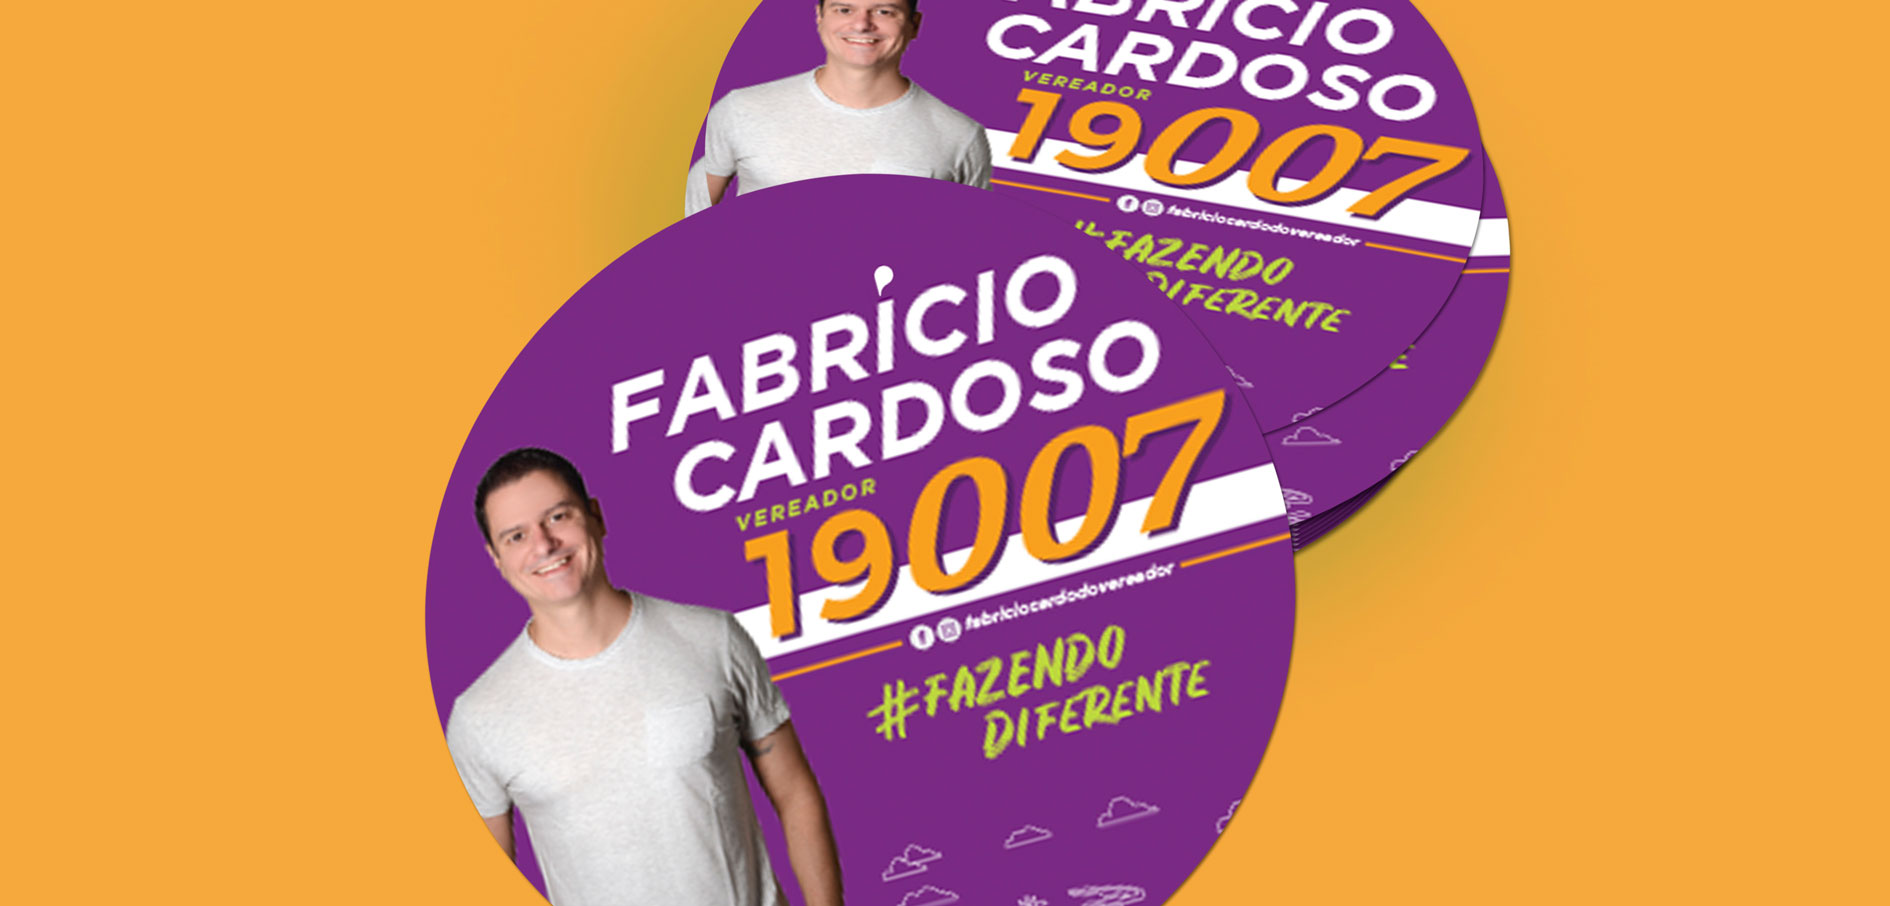 Fabrício-Cardoso---Campanha-Vereador-3